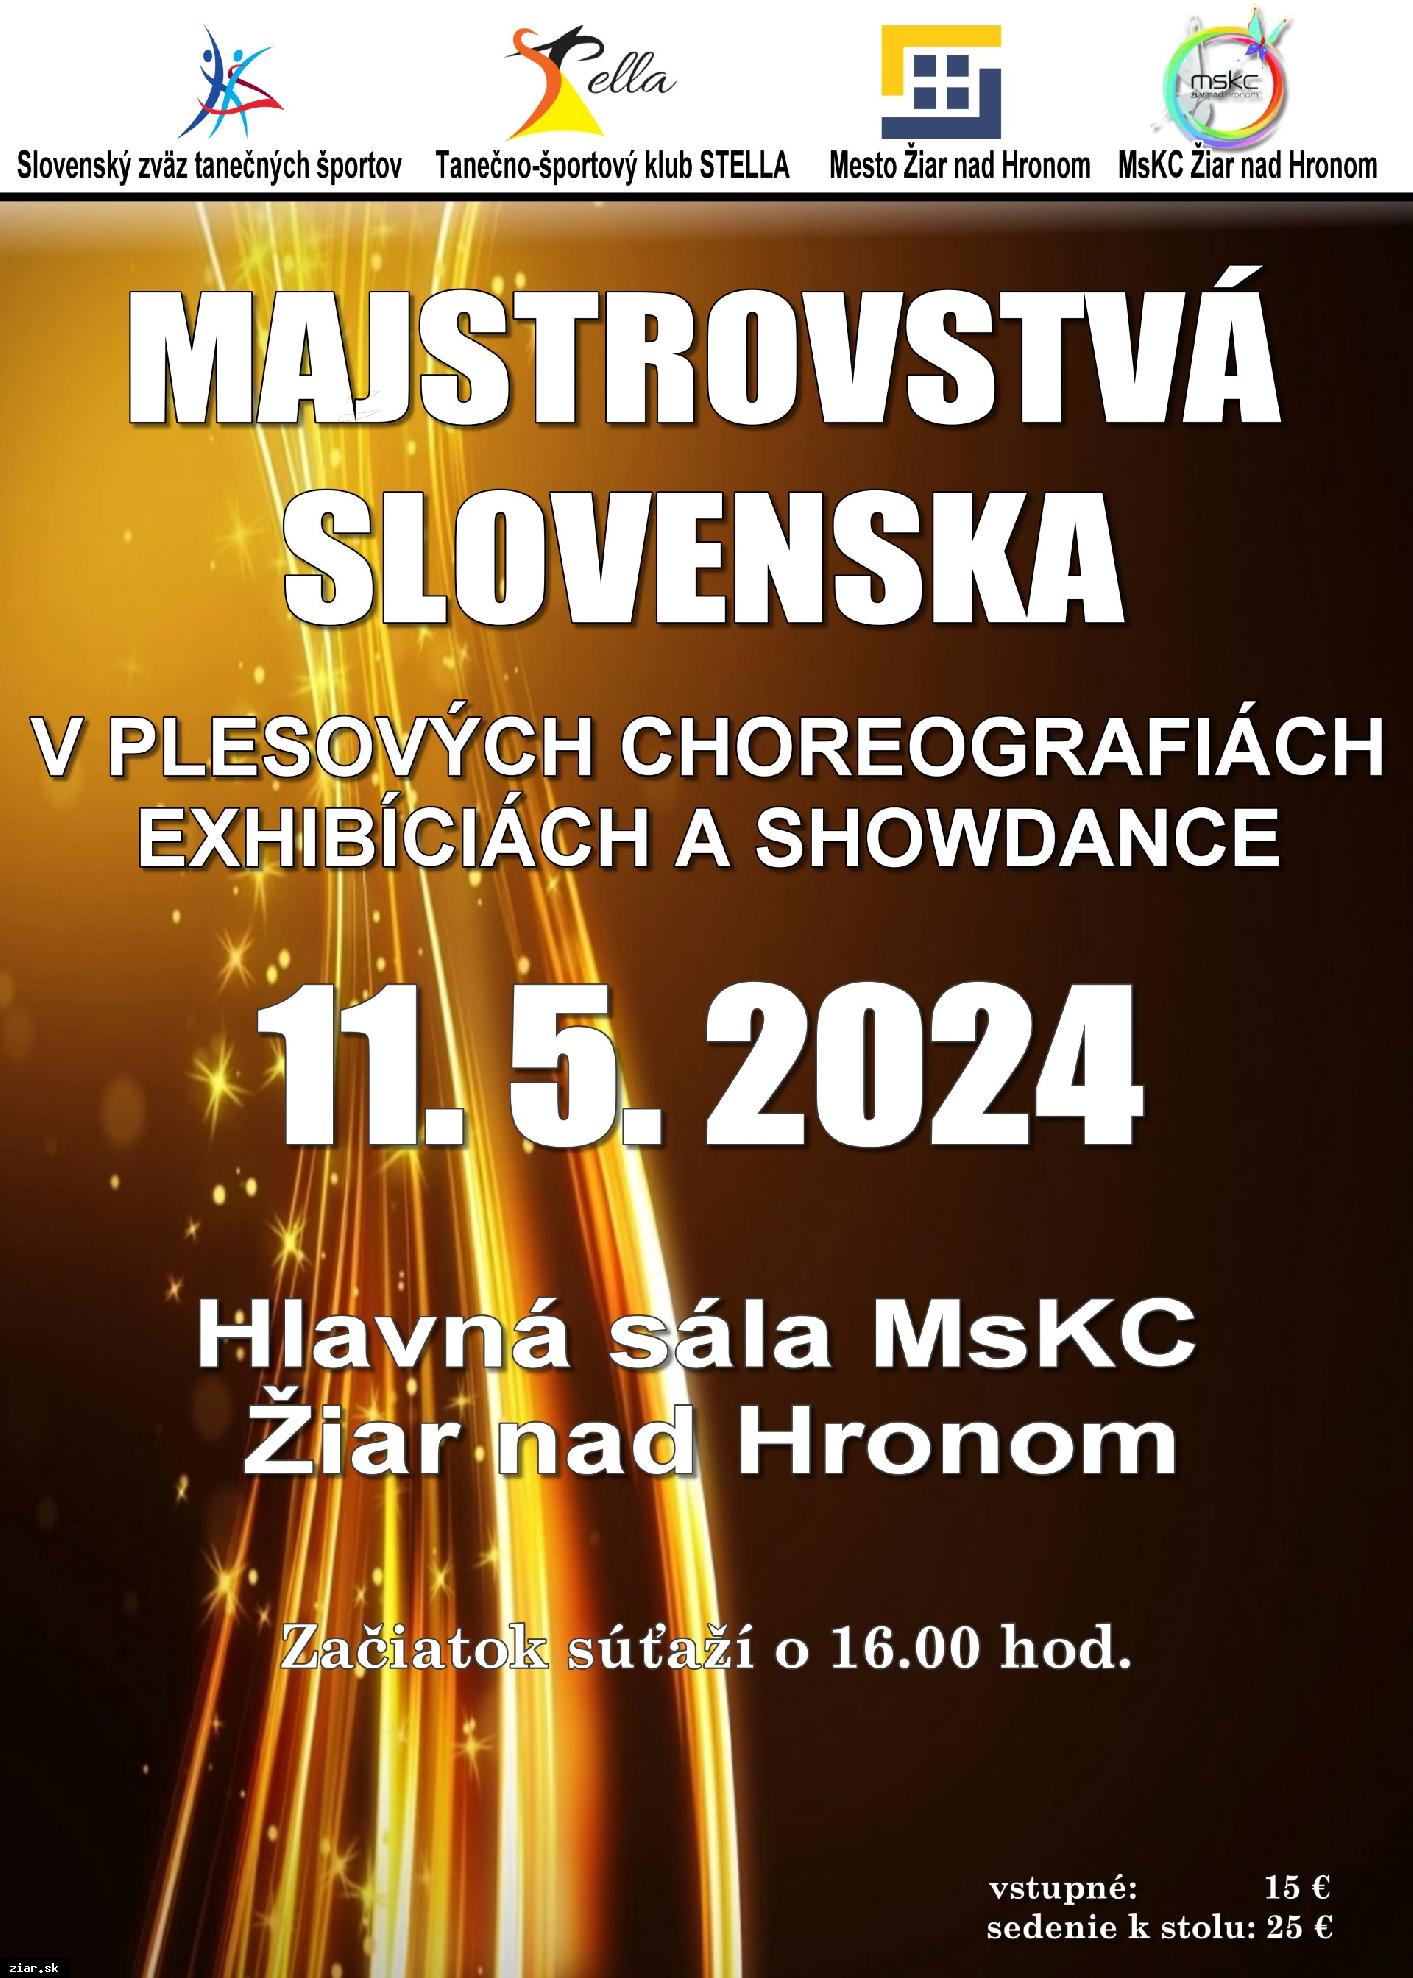 MSR v plesových choreografiách a exibíciách a showdance 2024